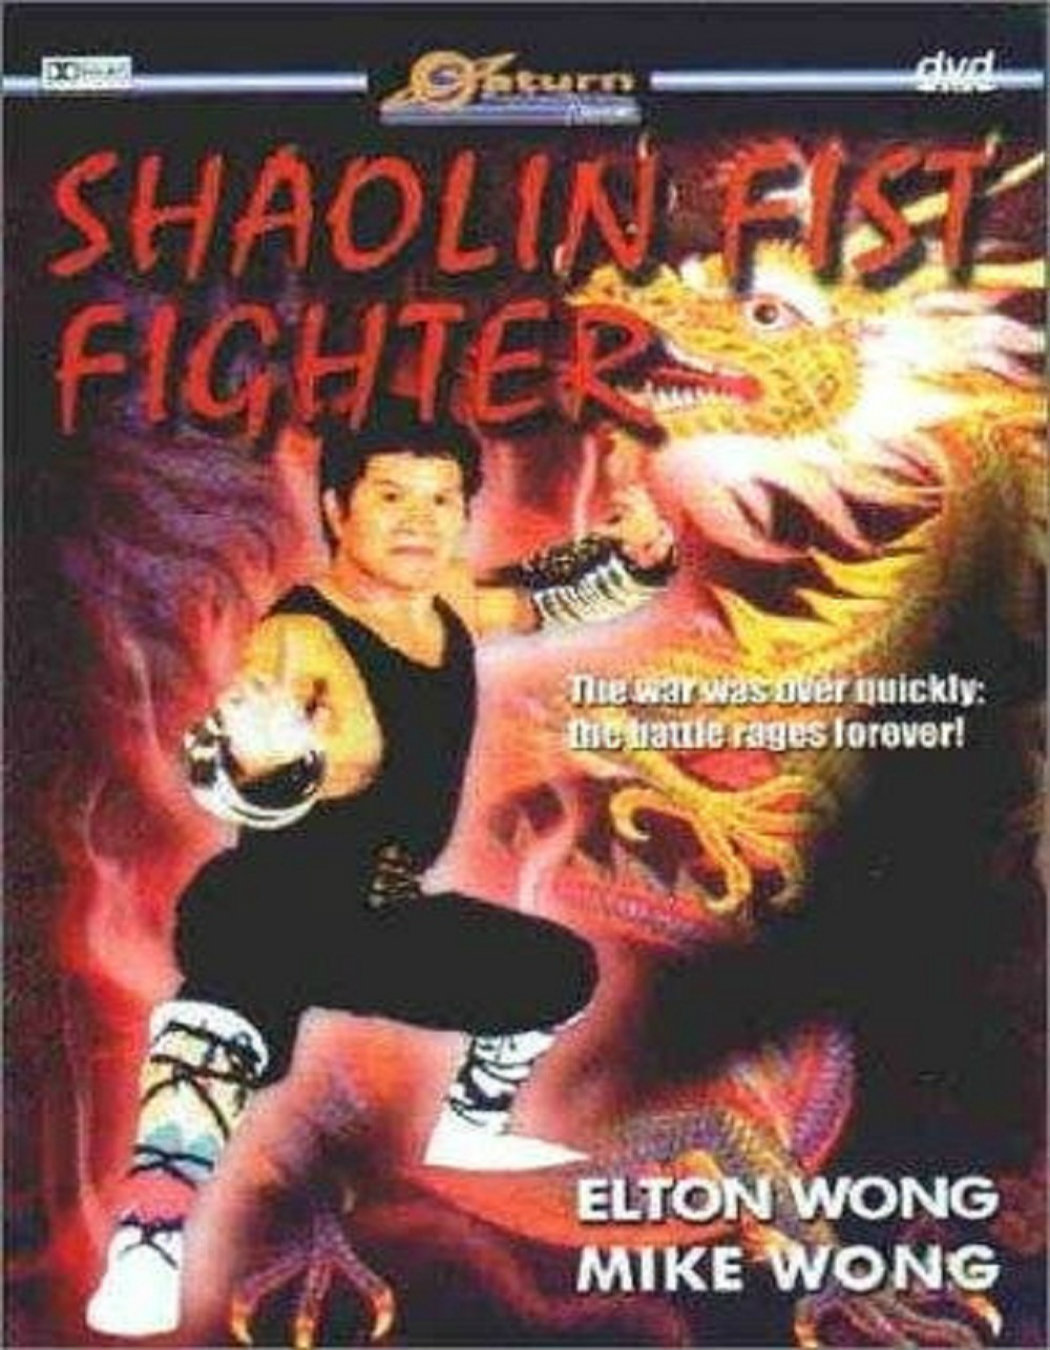 Watch Film Fist Fight 720P Online